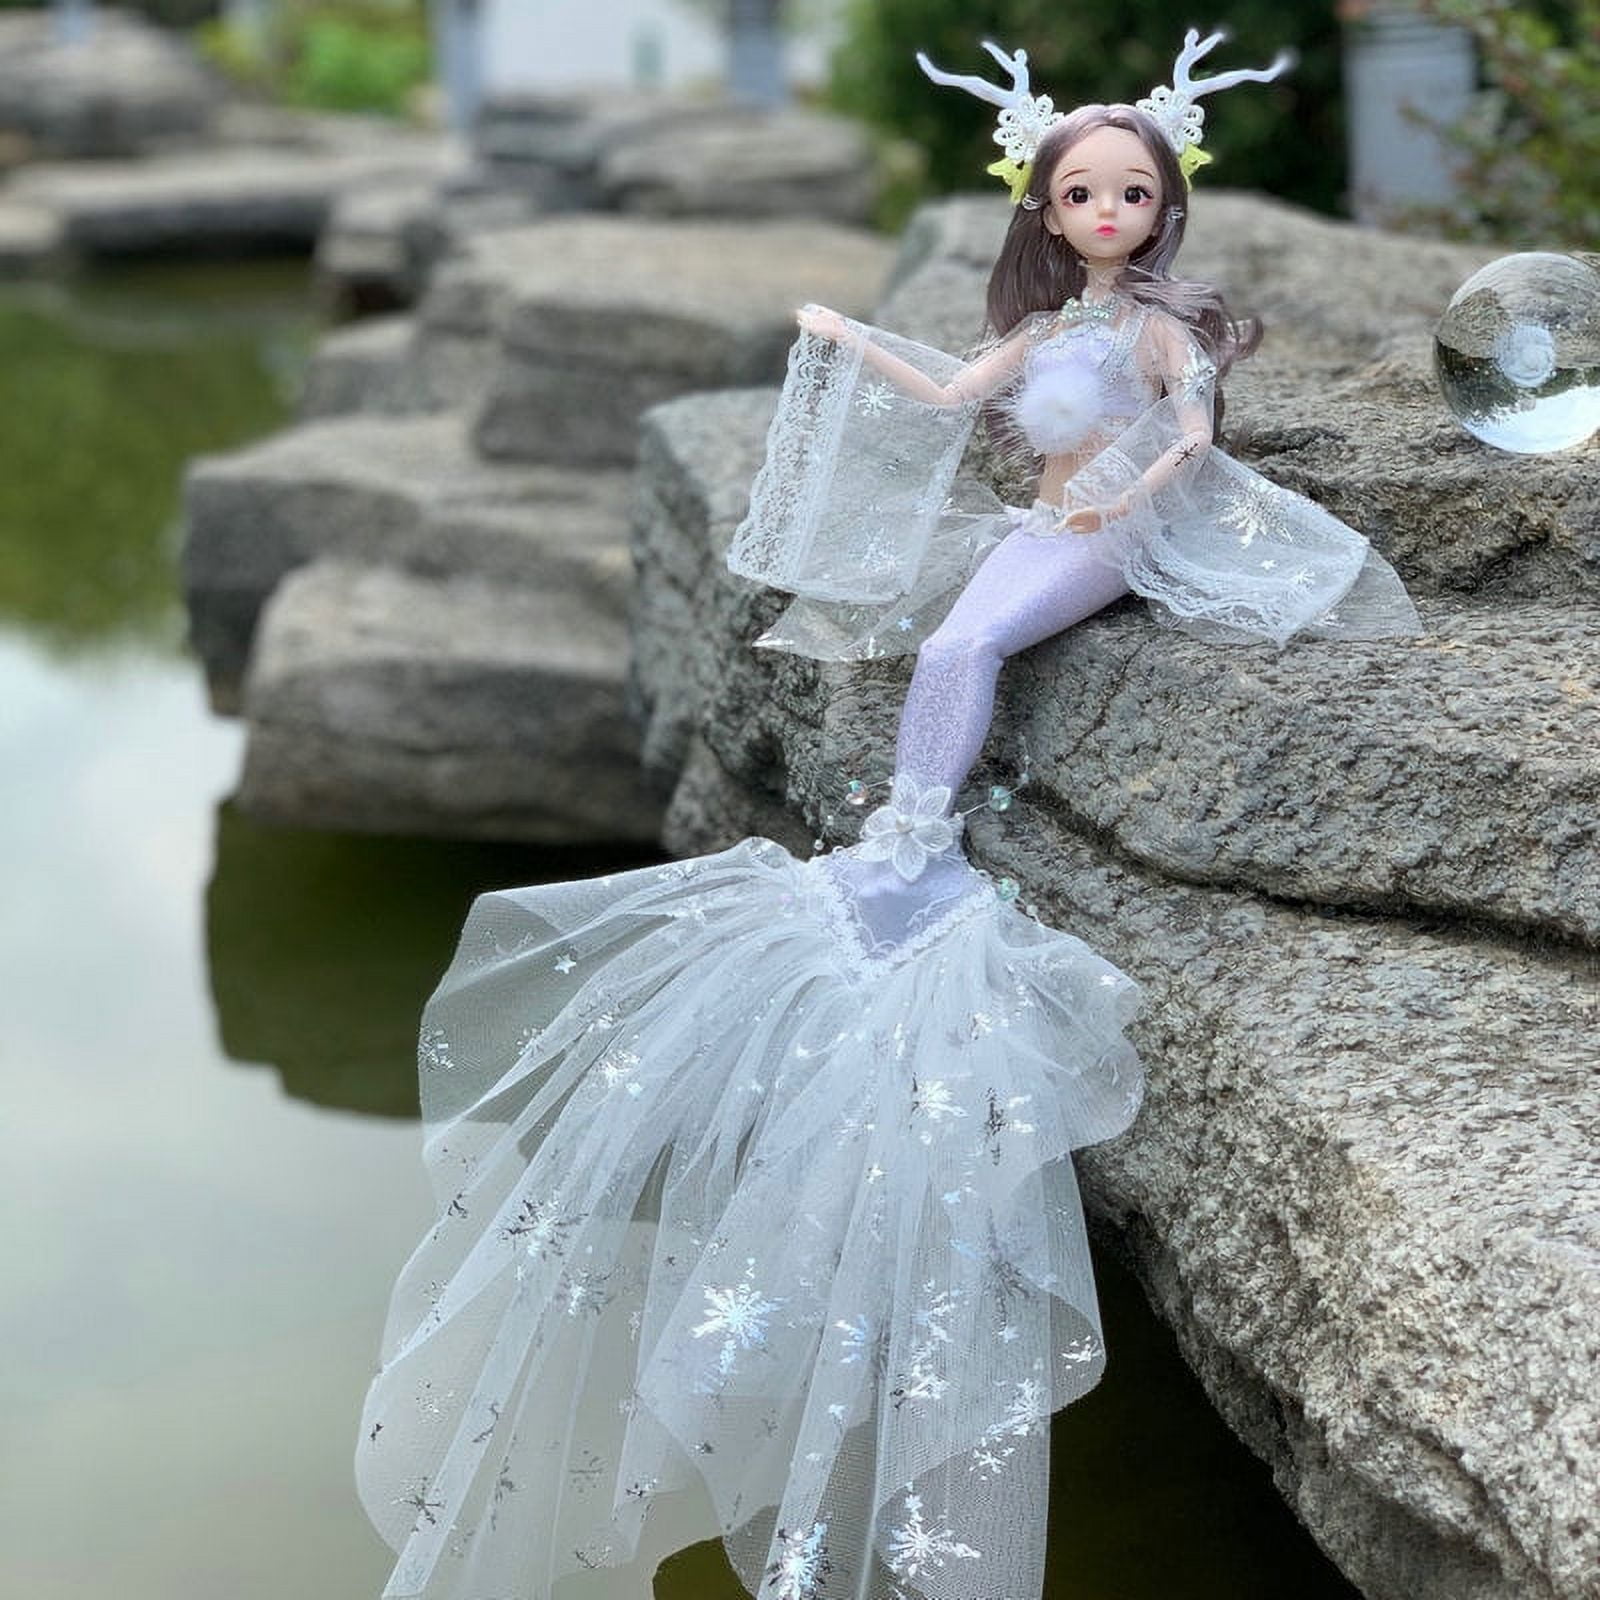 45cm Wedding Mermaid Doll Toys Decoration DIY Birthday Gifts for Girls(Blue)